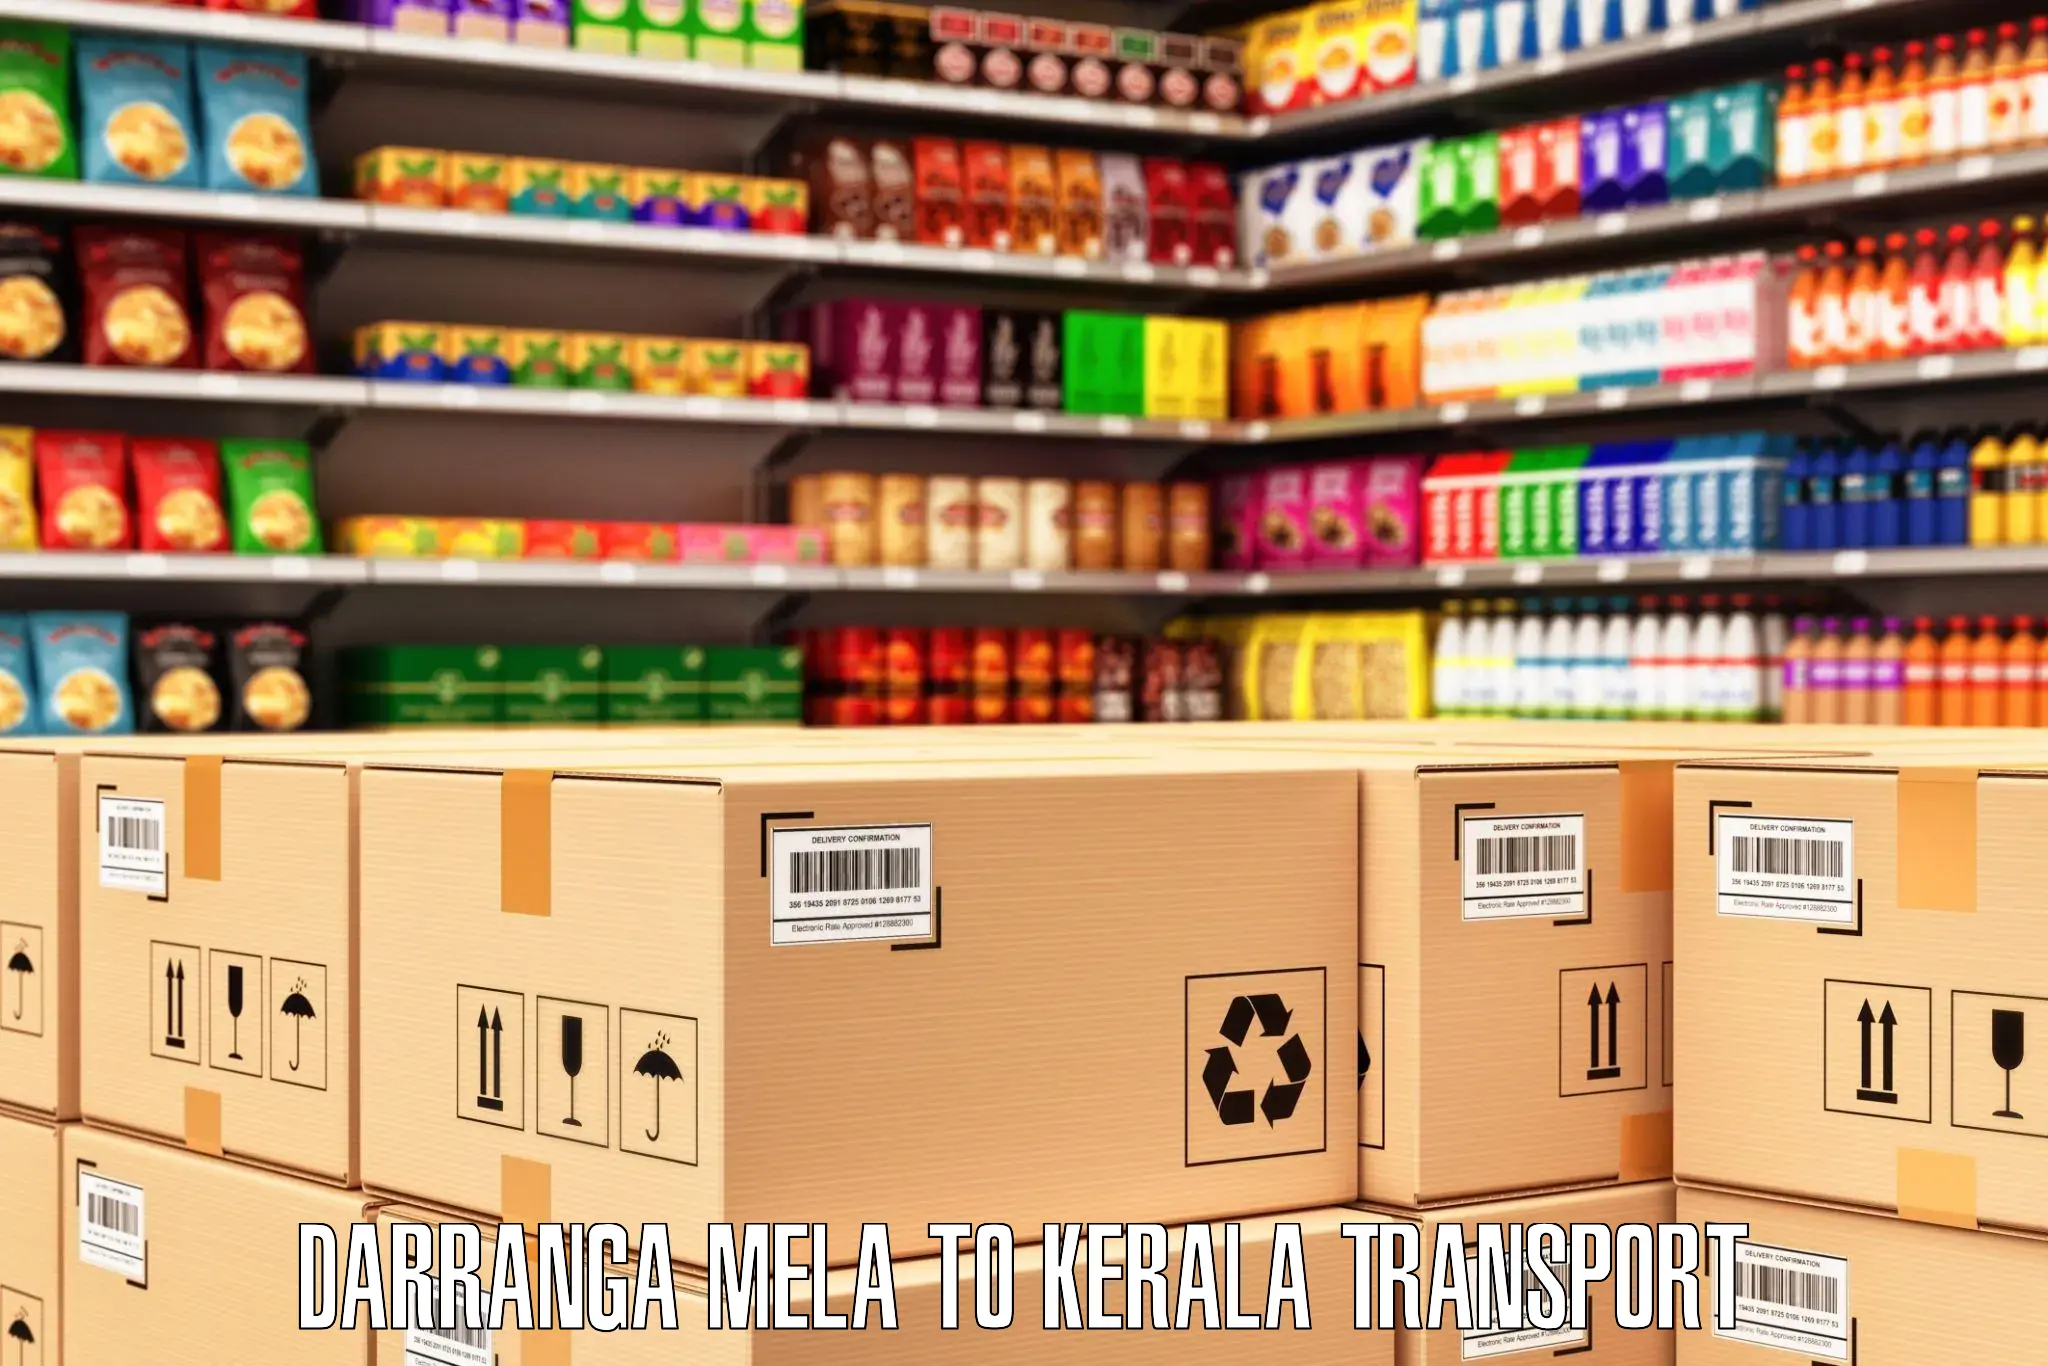 Cargo transportation services Darranga Mela to Trivandrum